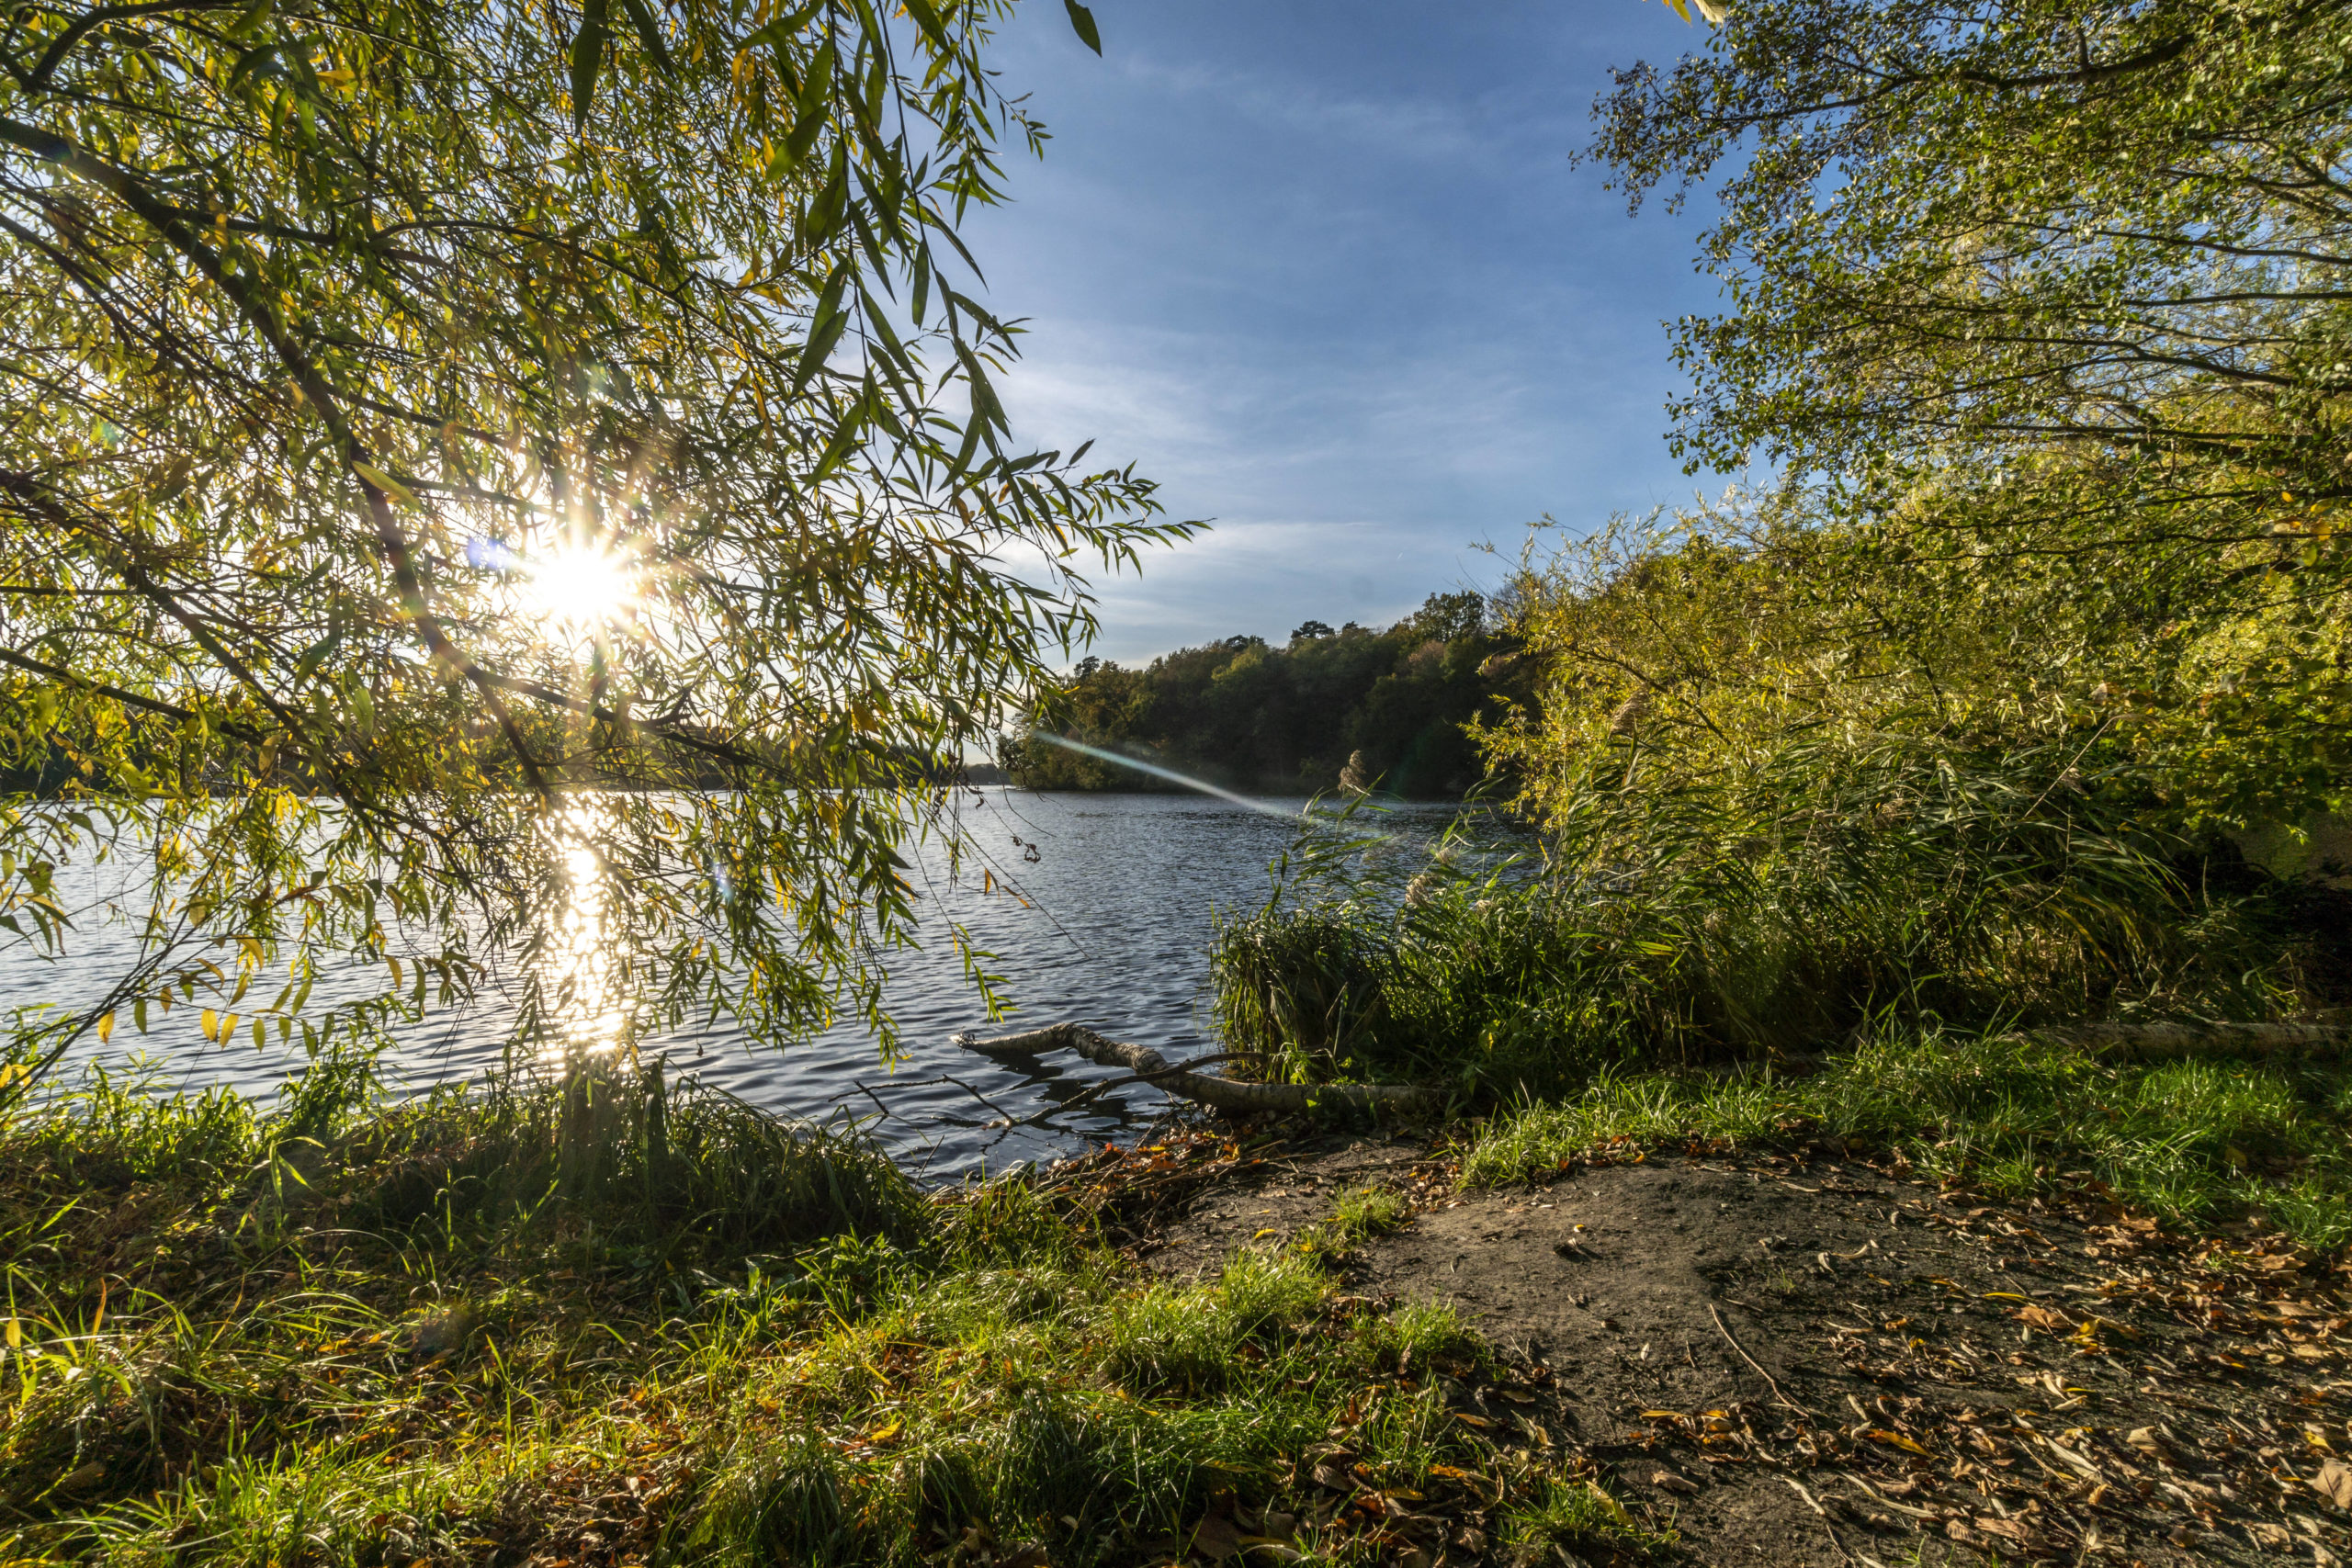 Der Machnower See im Sonnenschein ist schön. Unsere Wanderung von Berlin nach Brandenburg führt auch zu diesem Gewässer. Foto: Imago/Travel-Stock-Image